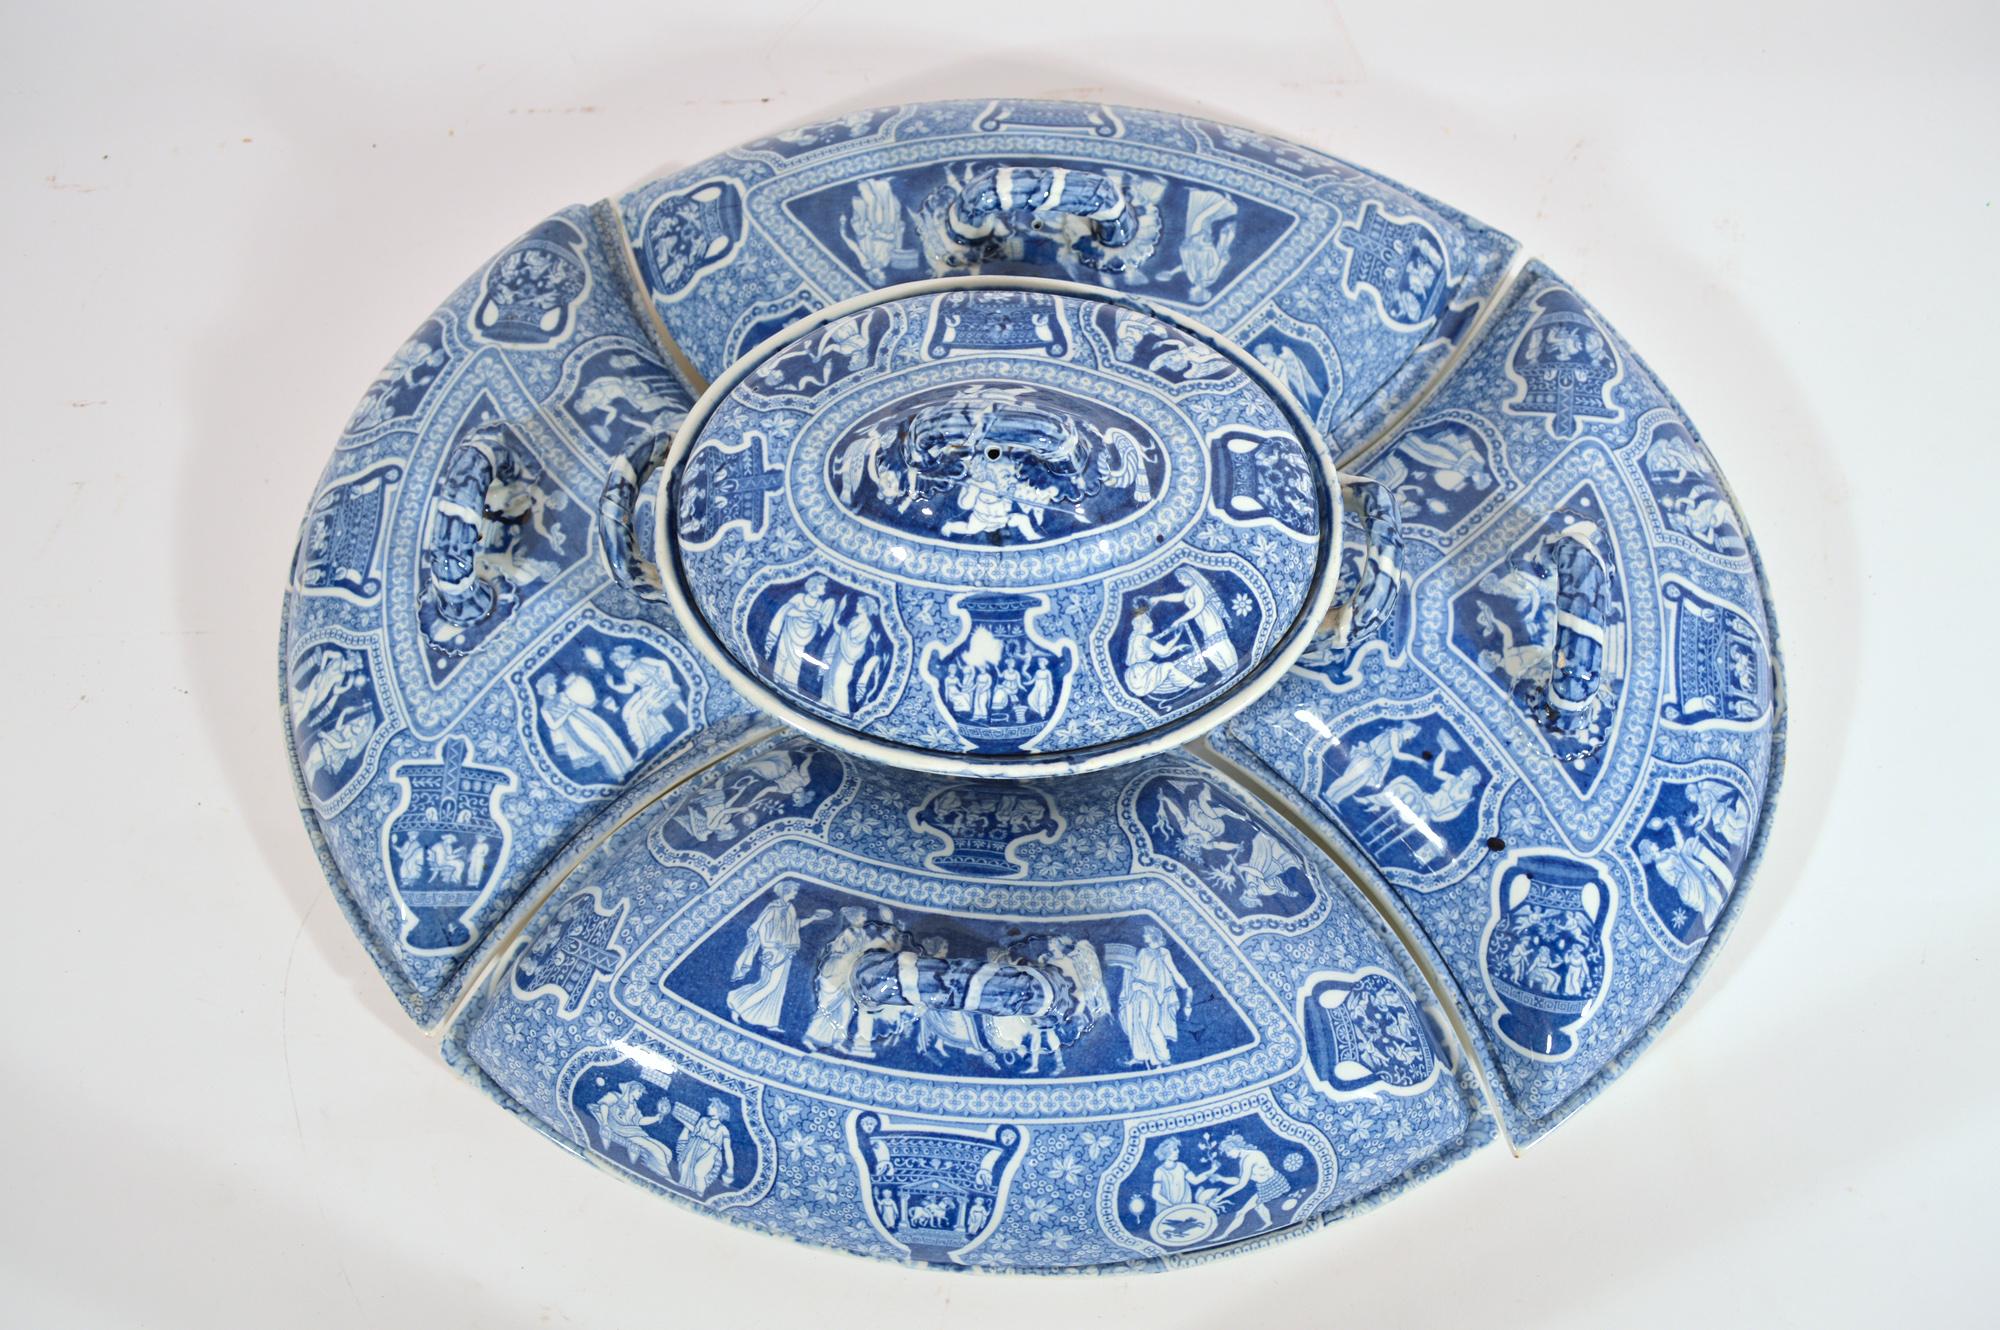 Spode Keramik Neo-klassischen griechischen Muster blau gedruckt supper set 
Anfang des 19. Jahrhunderts 

Aus einer großen Sammlung von griechischen Musterstücken in verschiedenen Farben und Formen

Das seltene unterglasurblaue griechische